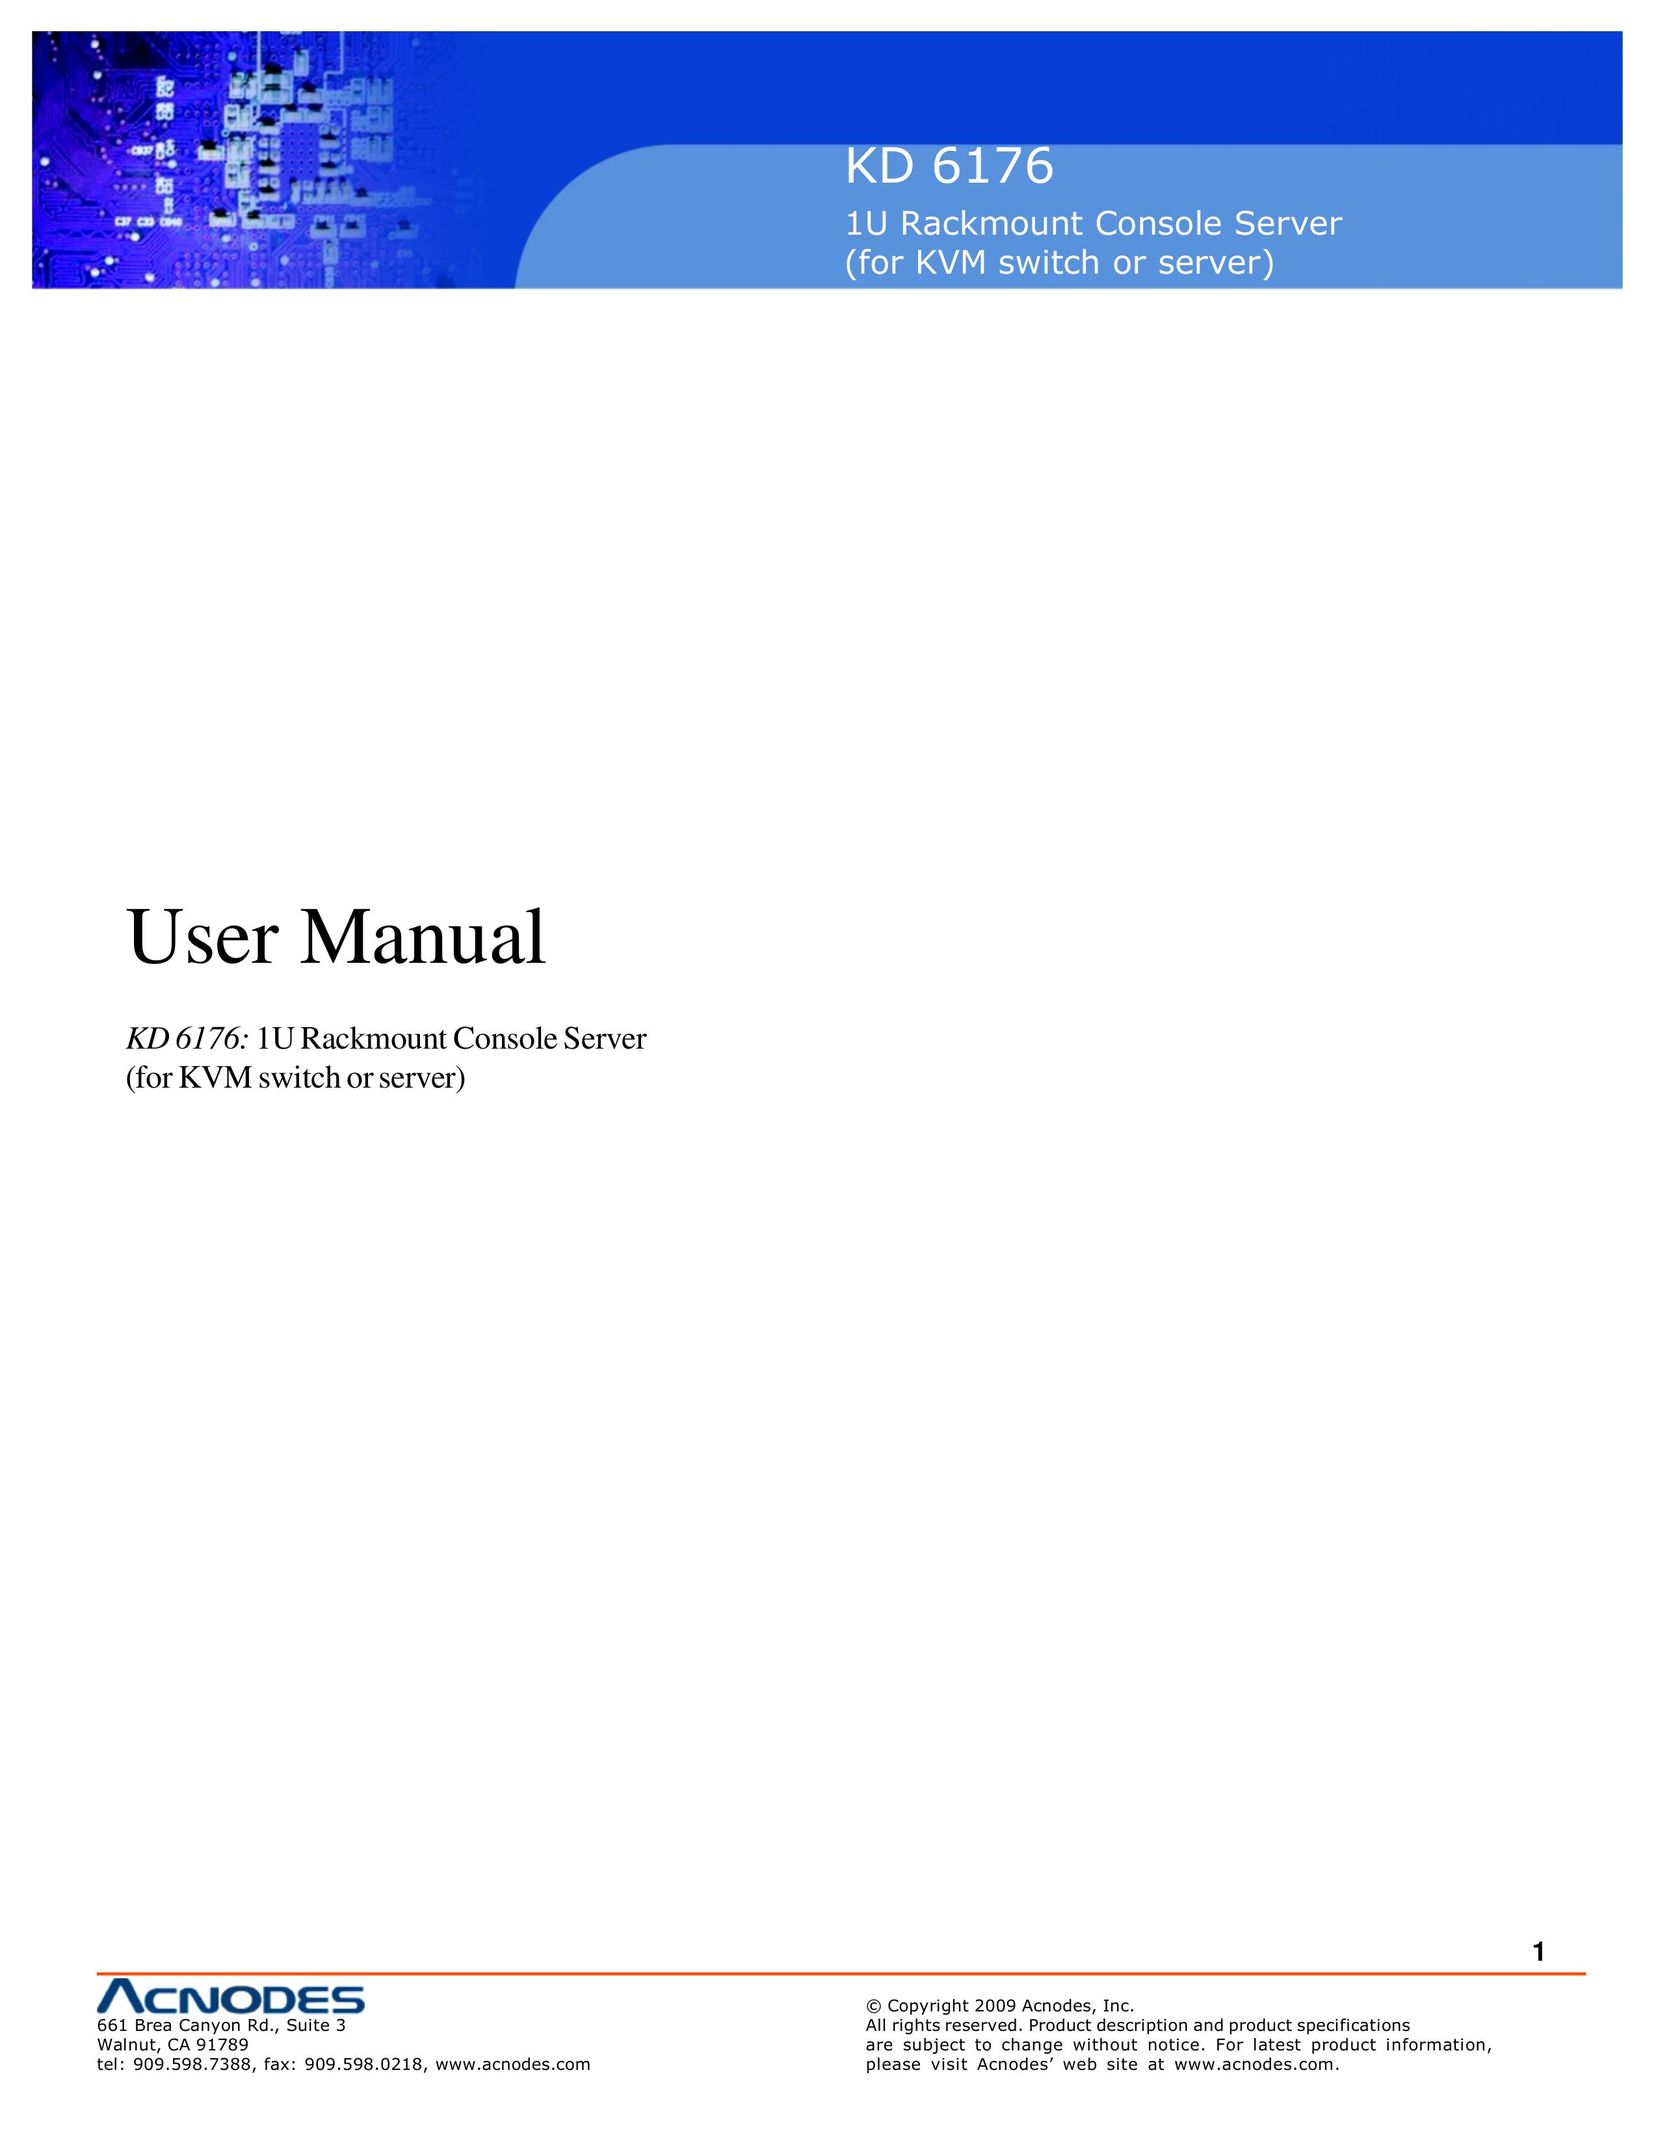 Acnodes KD 6176 Server User Manual